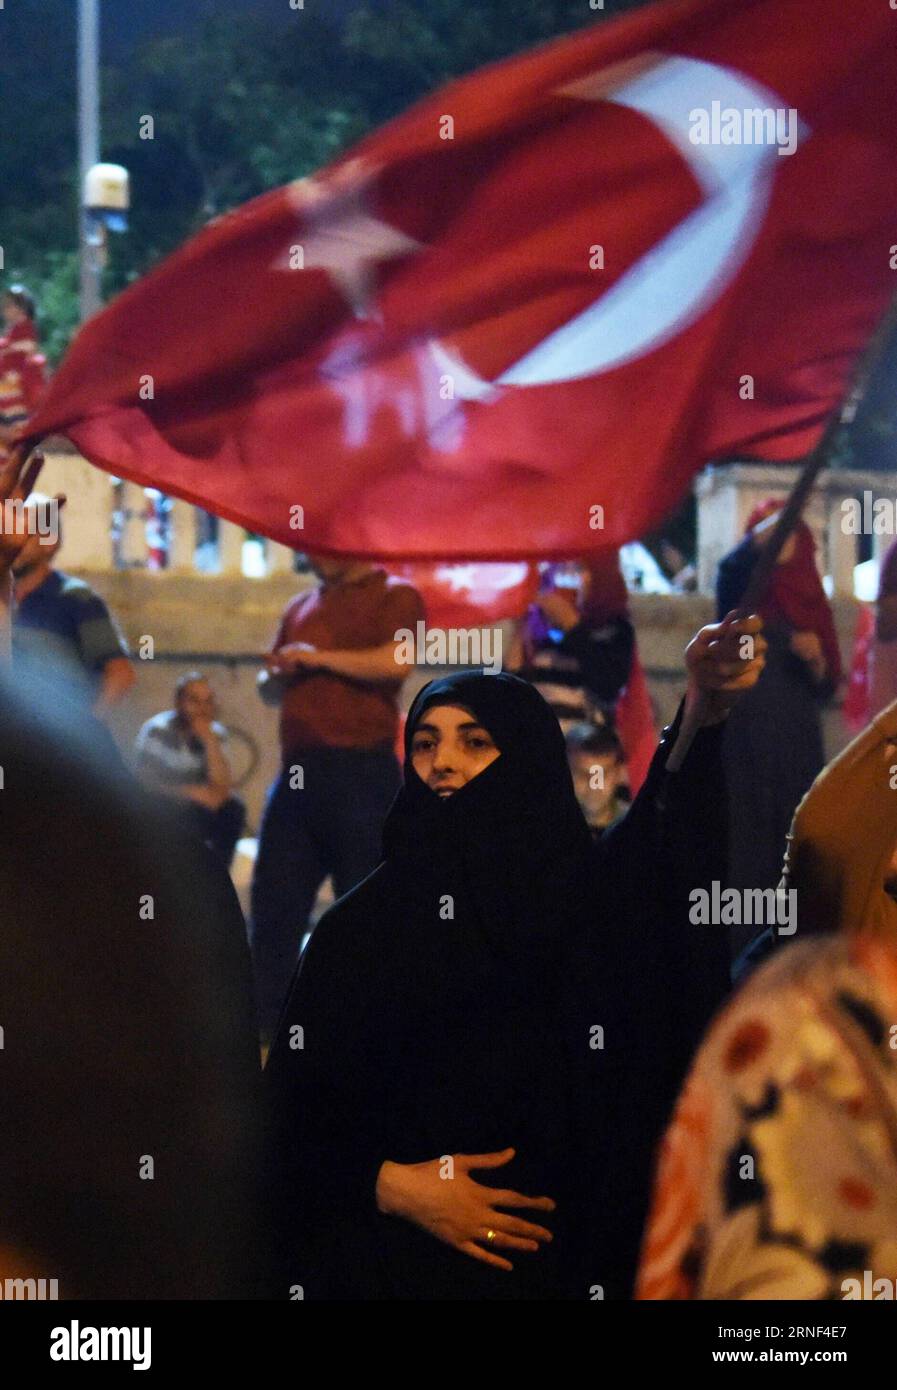 (160718) -- ISTANBUL, 18 luglio 2016 -- la gente partecipa a una manifestazione a sostegno del presidente turco Recep Tayyip Erdogan in piazza Taksim a Istanbul, Turchia, 18 luglio 2016. Il Ministero degli Esteri turco ha dichiarato in una dichiarazione di domenica che il fallito colpo di stato militare ha lasciato almeno 290 persone uccise e più di 6.000 sono state arrestate finora a causa del loro coinvolgimento nel colpo di stato. ) (nxl) TURCHIA-ISTANBUL-RALLY HexCanling PUBLICATIONxNOTxINxCHN 160718 Istanbul 18 luglio 2016 celebrità partecipano a un raduno a sostegno del presidente turco Recep Tayyip Erdogan A Piazza Taksim a Istanbul in Turchia Foto Stock